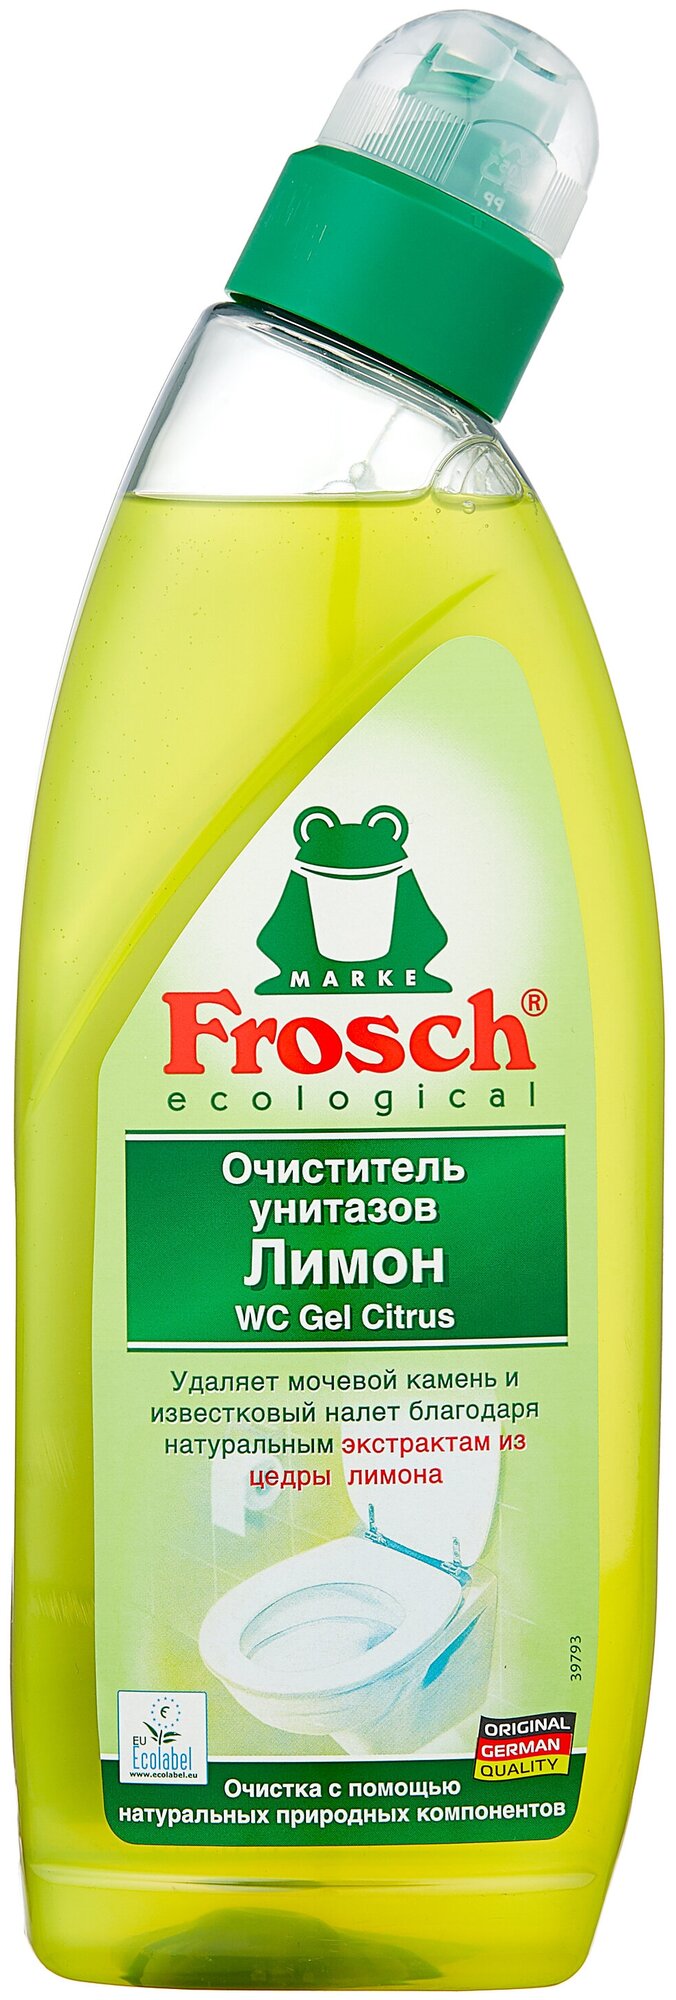 Фрош очиститель унитазов Лимон, 0,75 л.